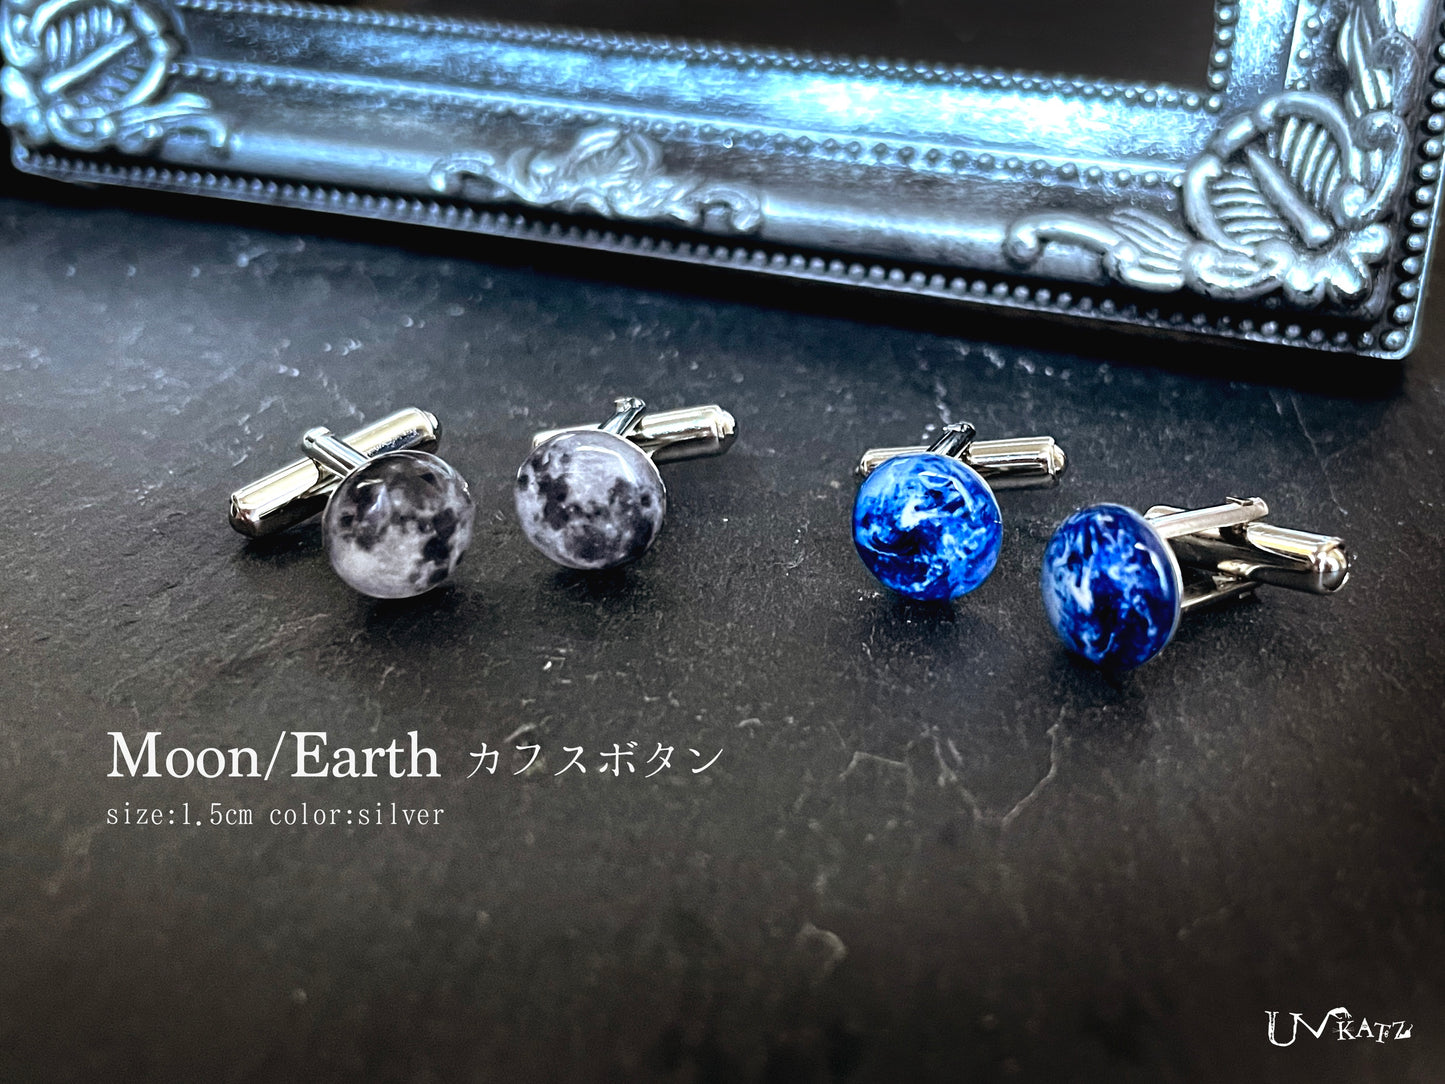 Earth/Moon カフスボタン